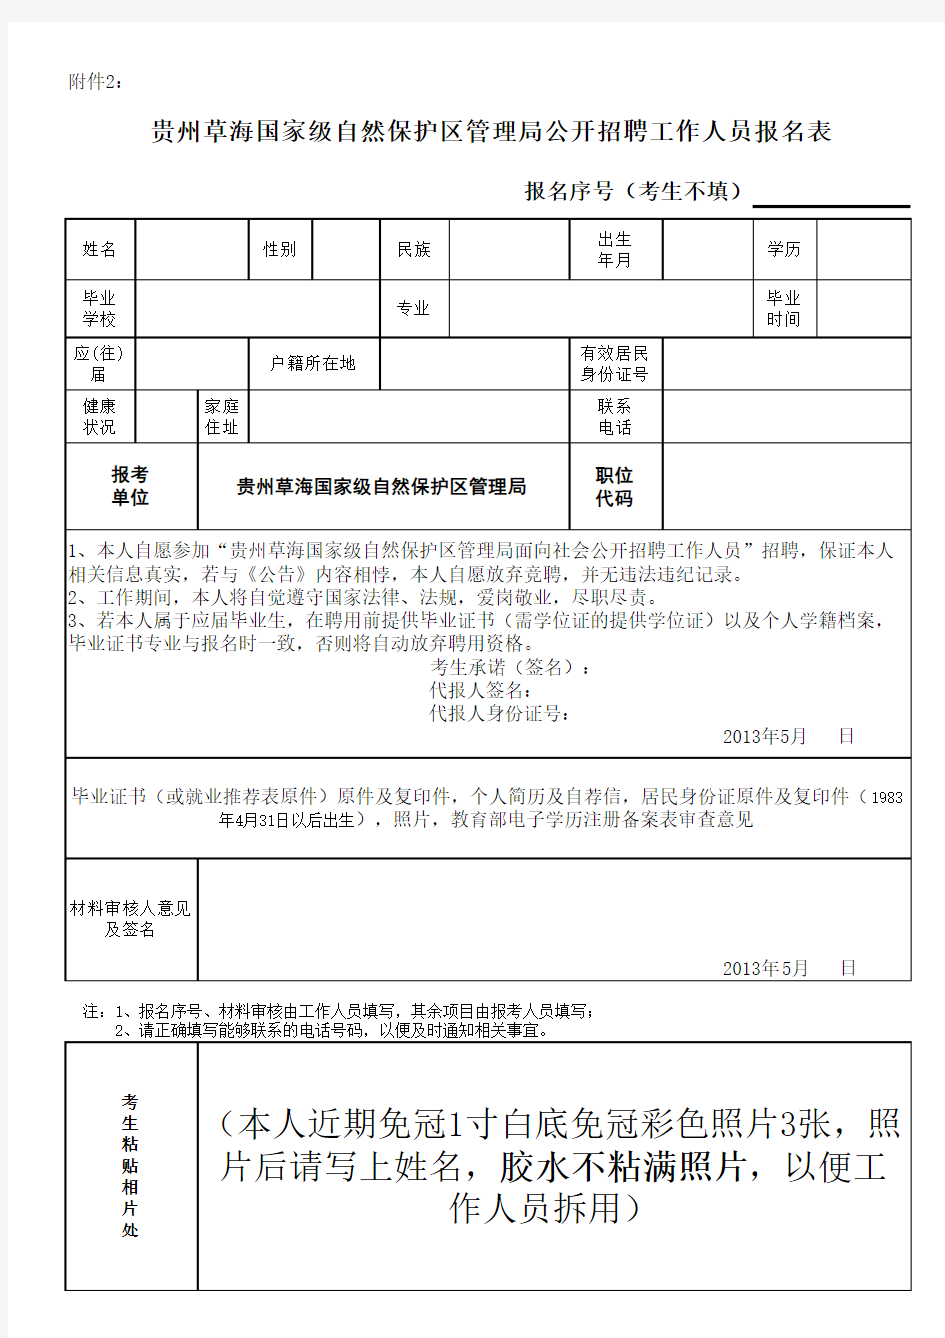 贵州草海国家级自然保护区管理局公开招聘工作人员报名表xls